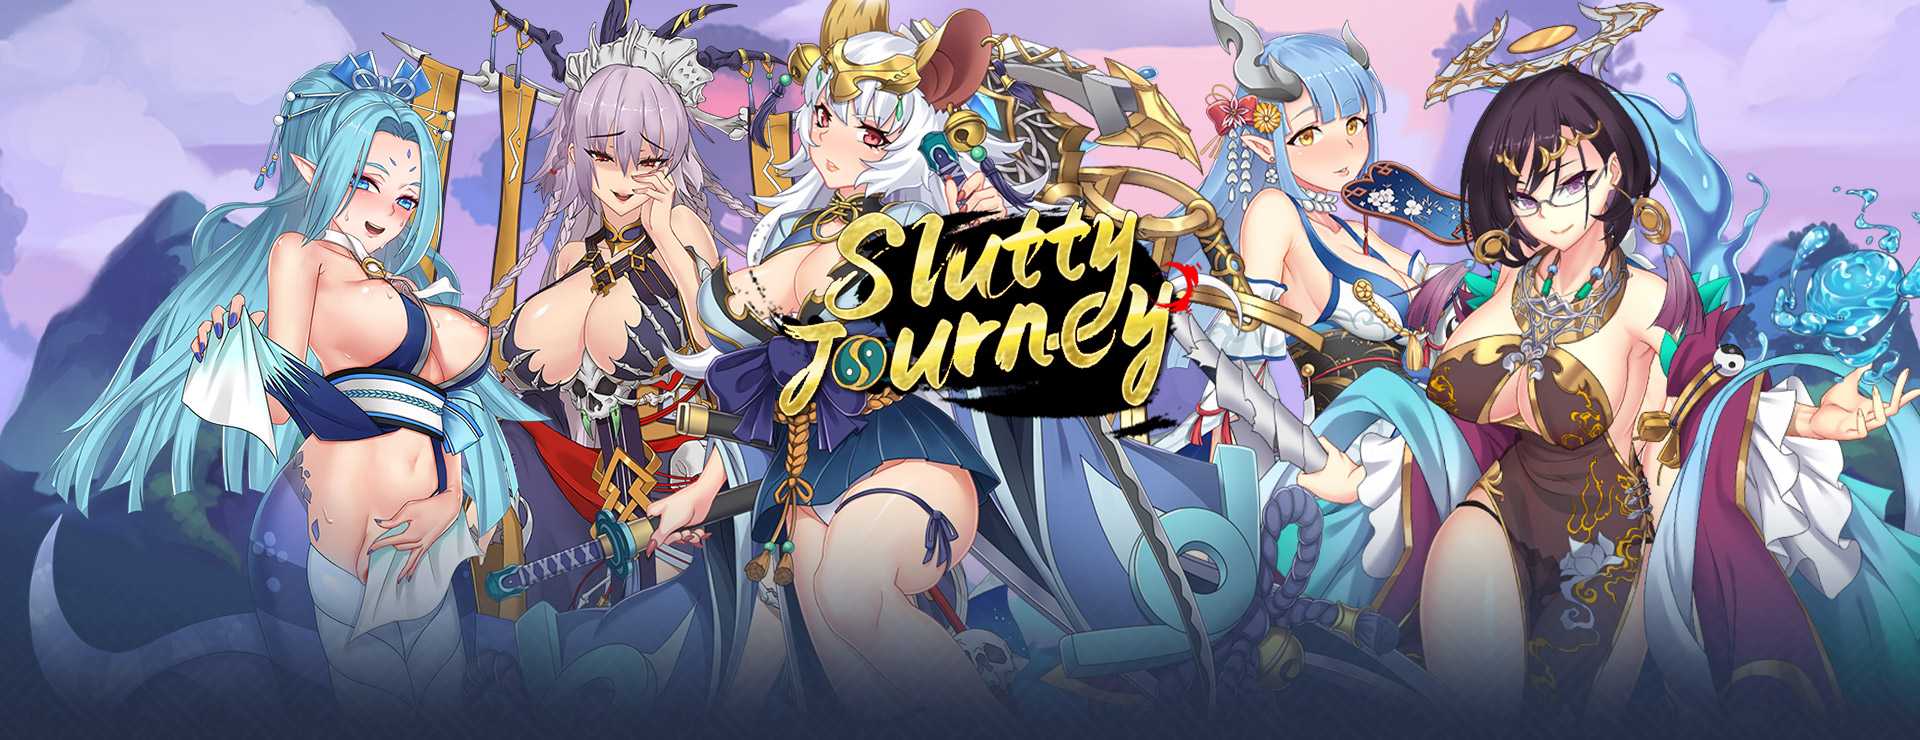 Slutty Journey - RPG Spiel